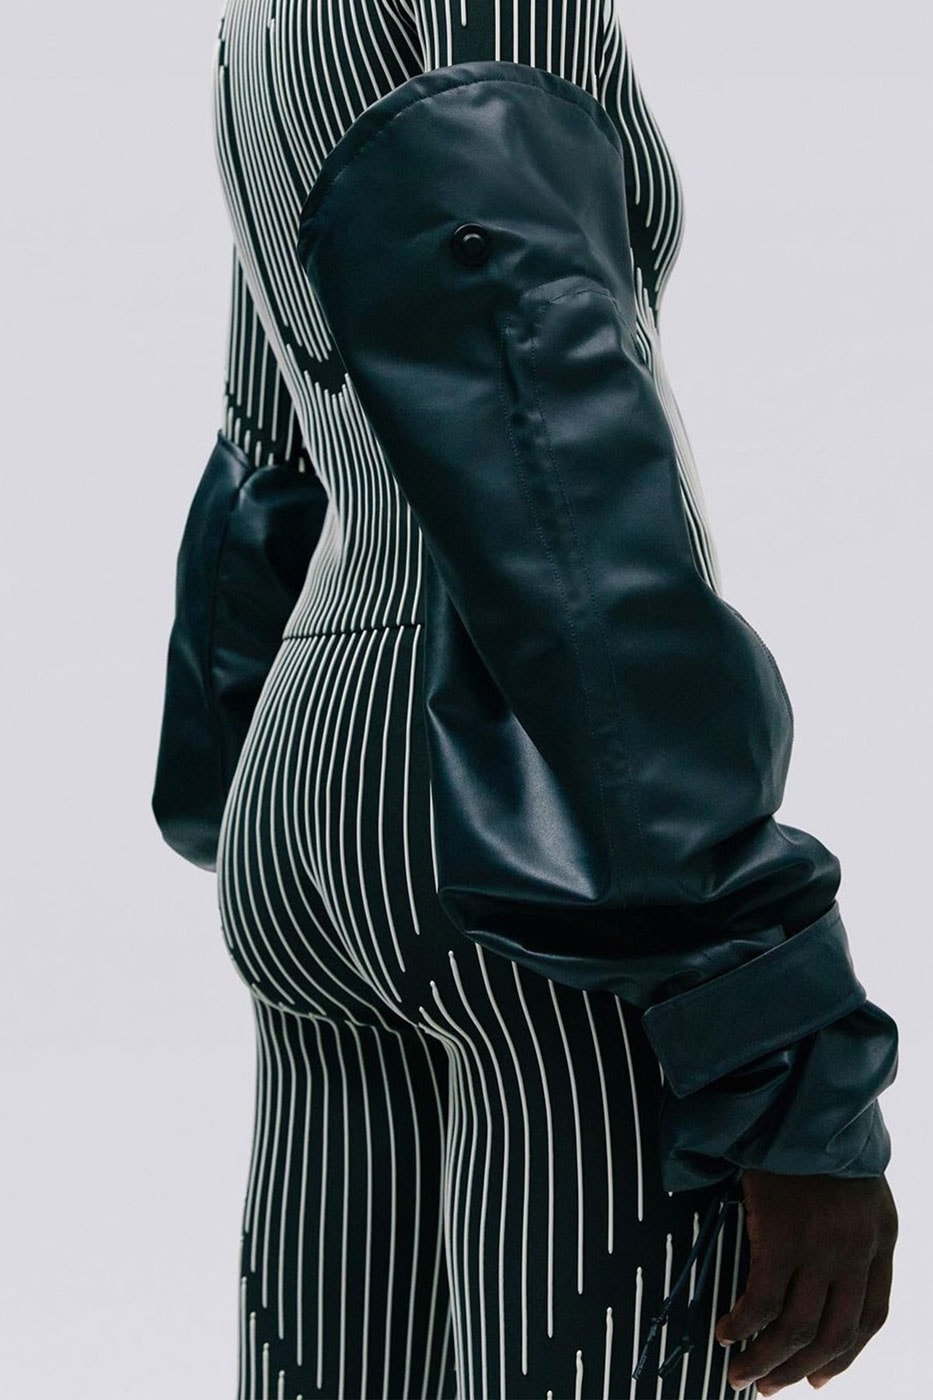 メルセデス・ベンツ x Acte TMによる服と車のデザインを融合させたカプセルコレクションに注目　mercedes benz acte tm acc01 white airbag leather briefcase mseat overalls fashion automotive design lookbook info